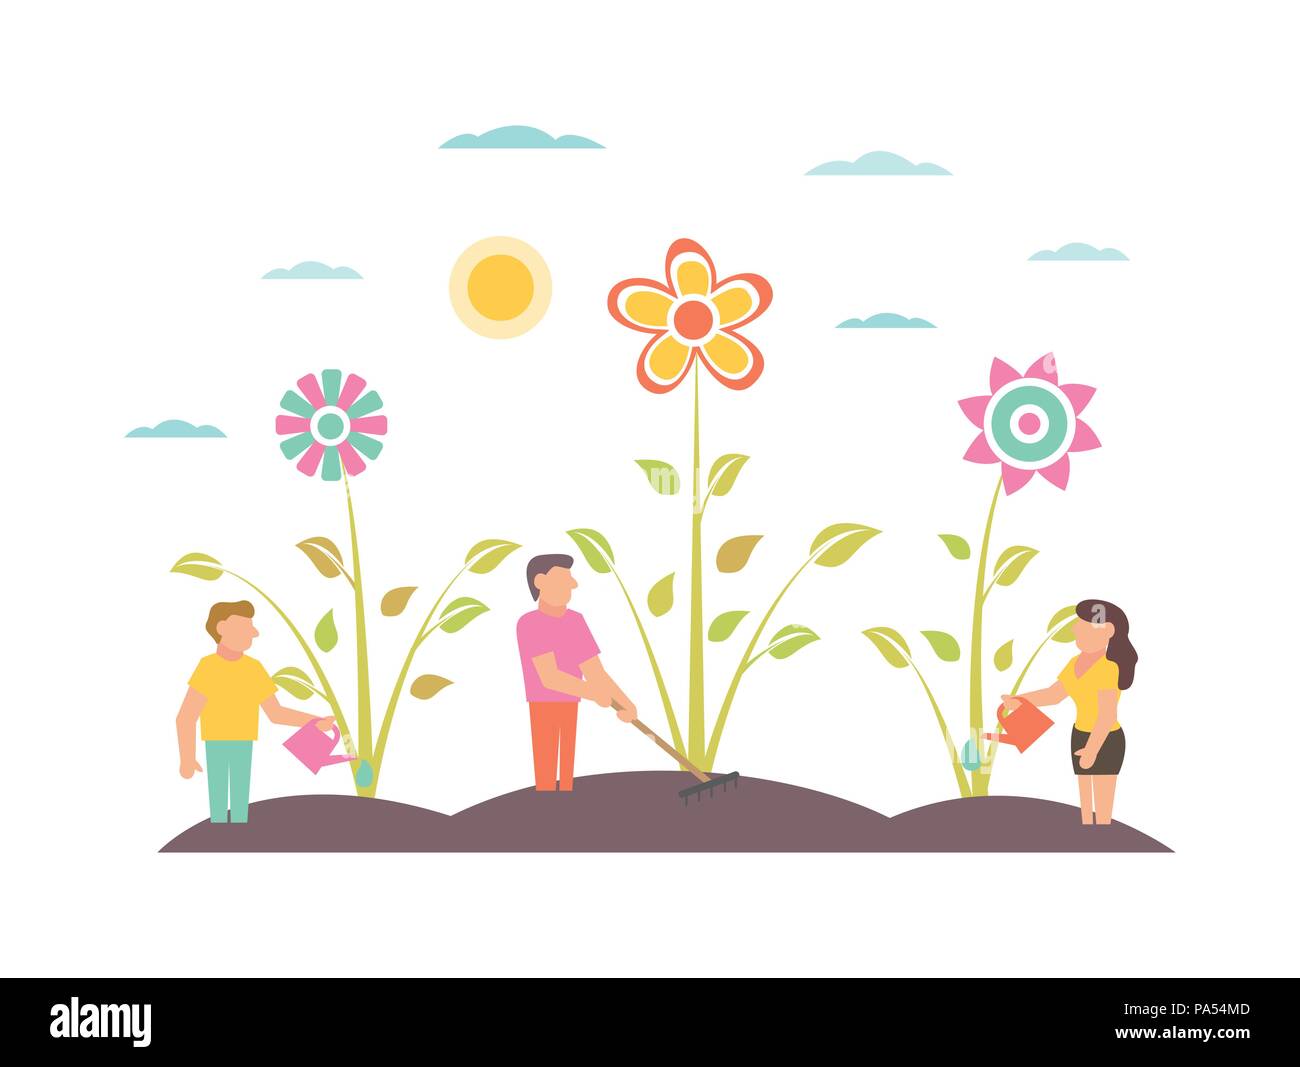 Garden Illustration with flowers Gardeners growing plants Stock Vector